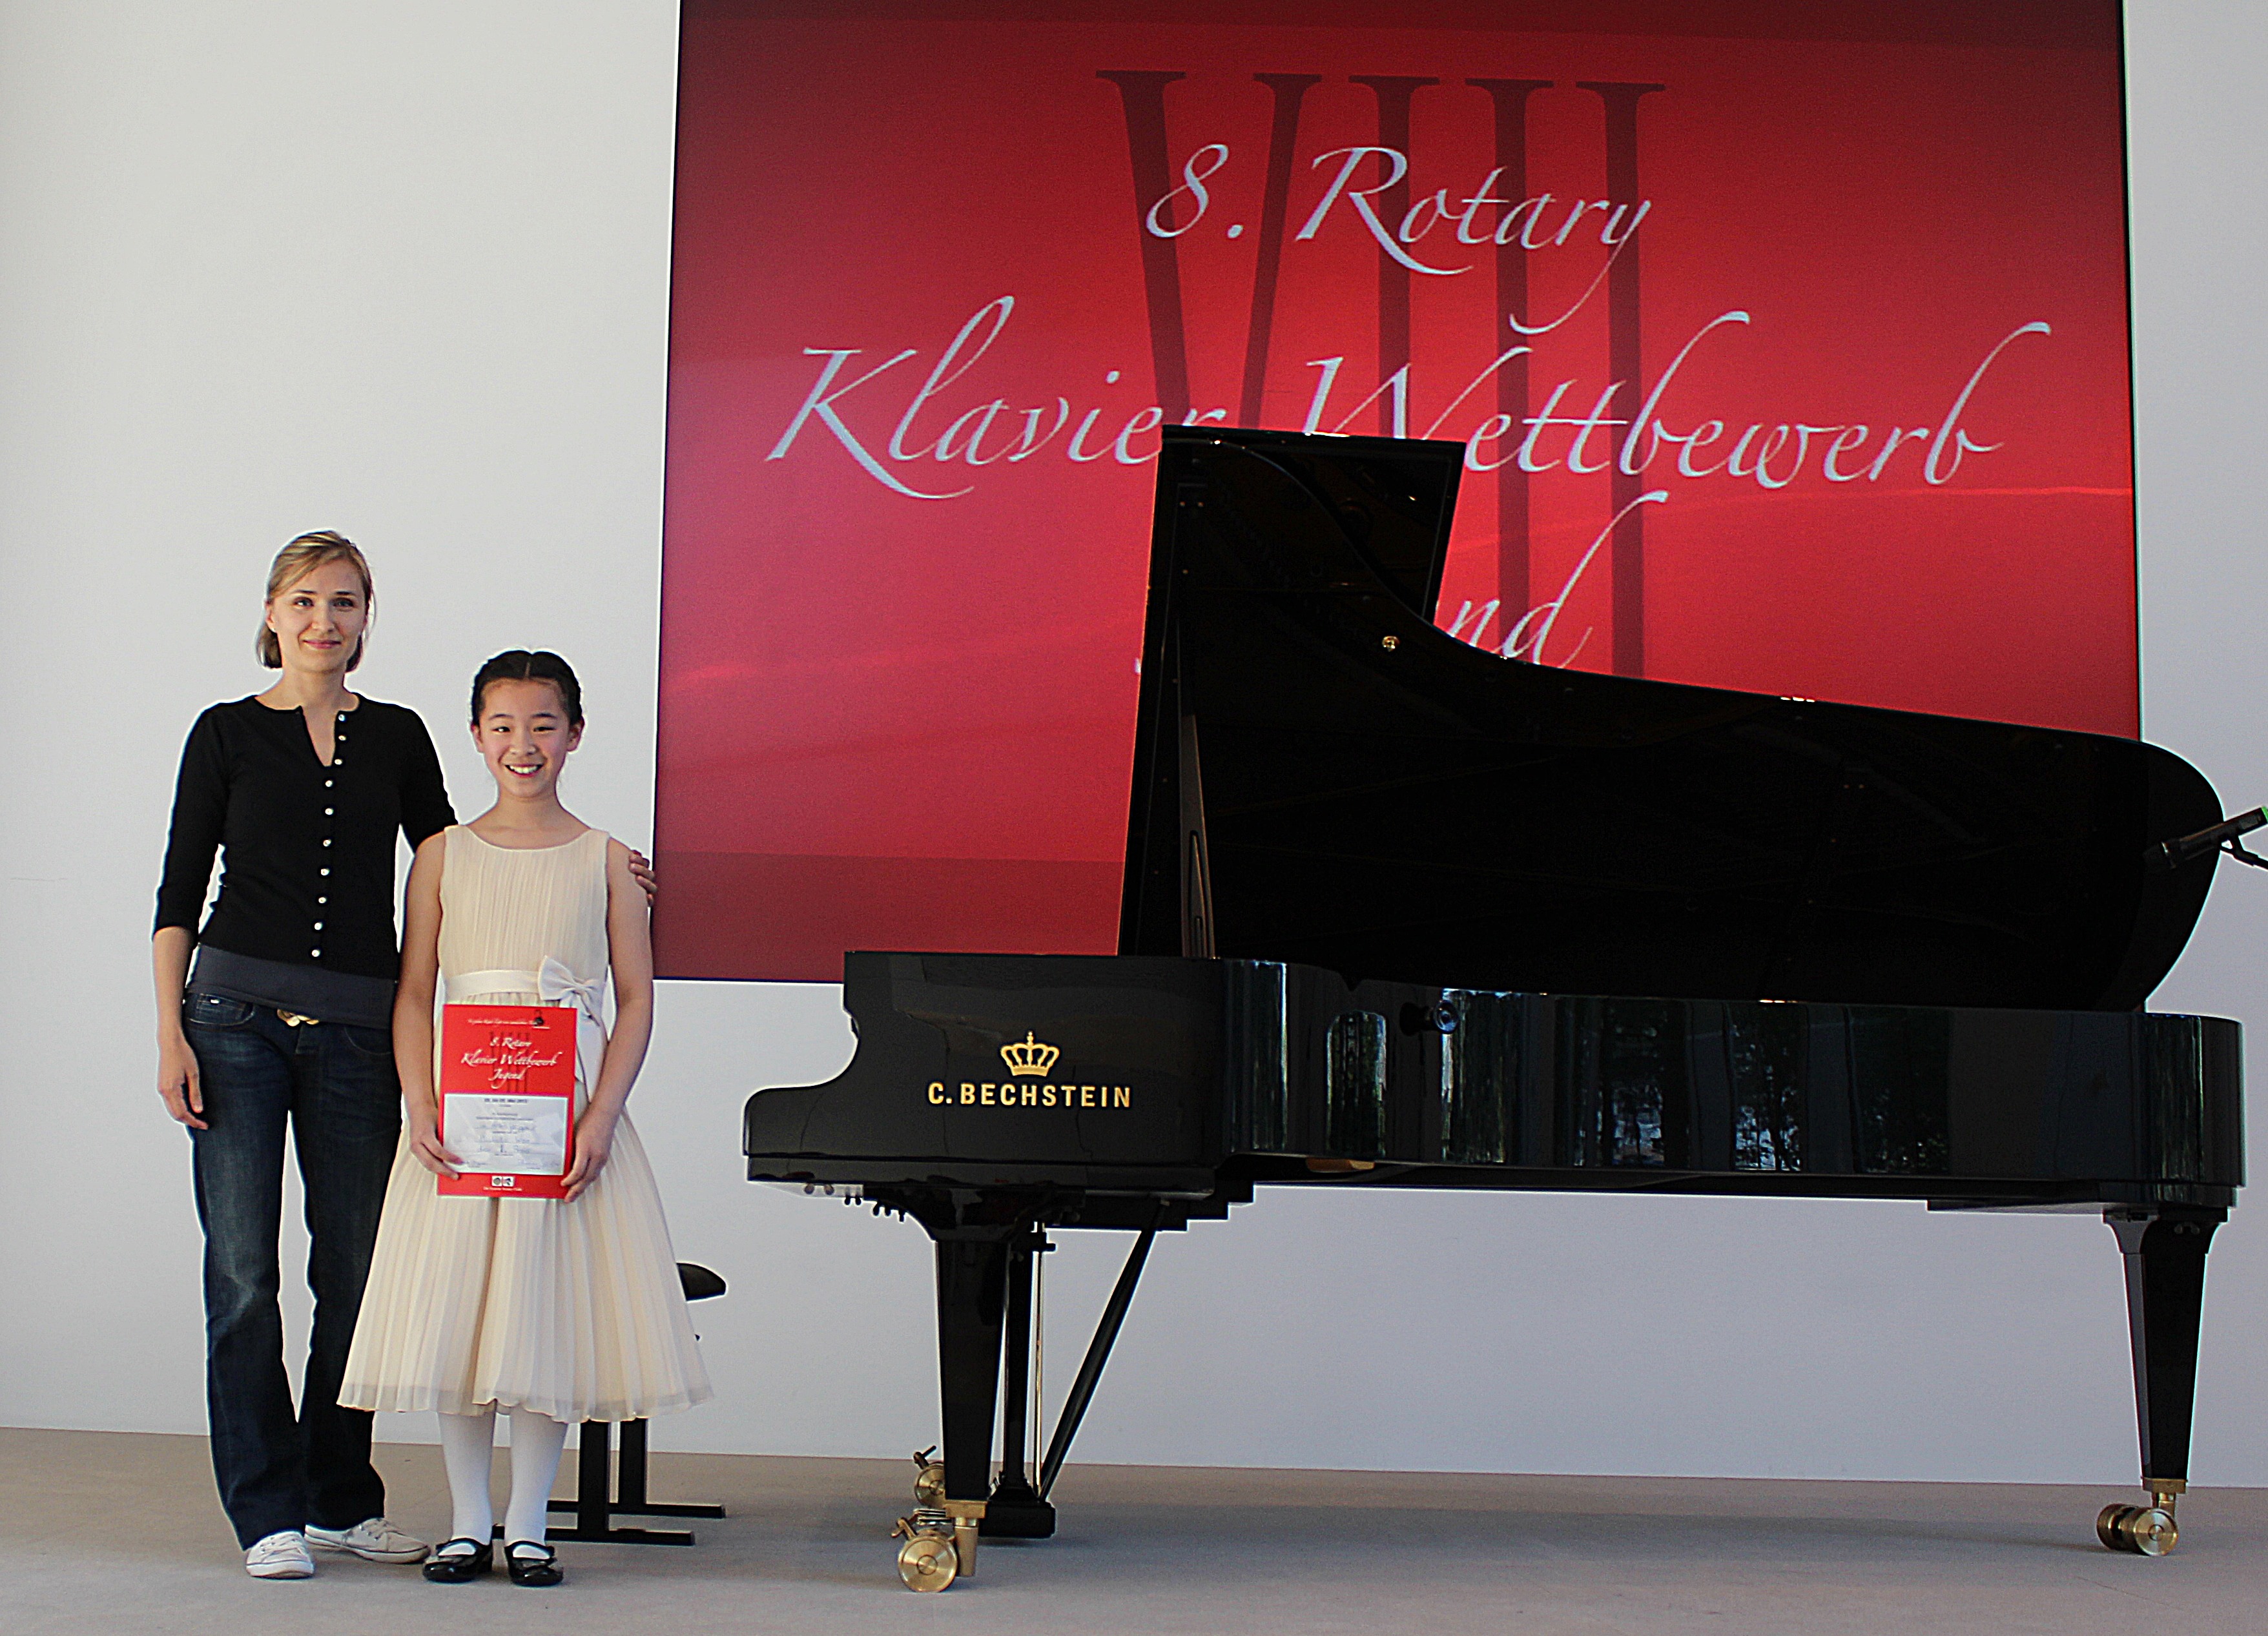 Michelle Woo, Erster Platz beim 8.Rotary Klavierwettbewerb in Essen